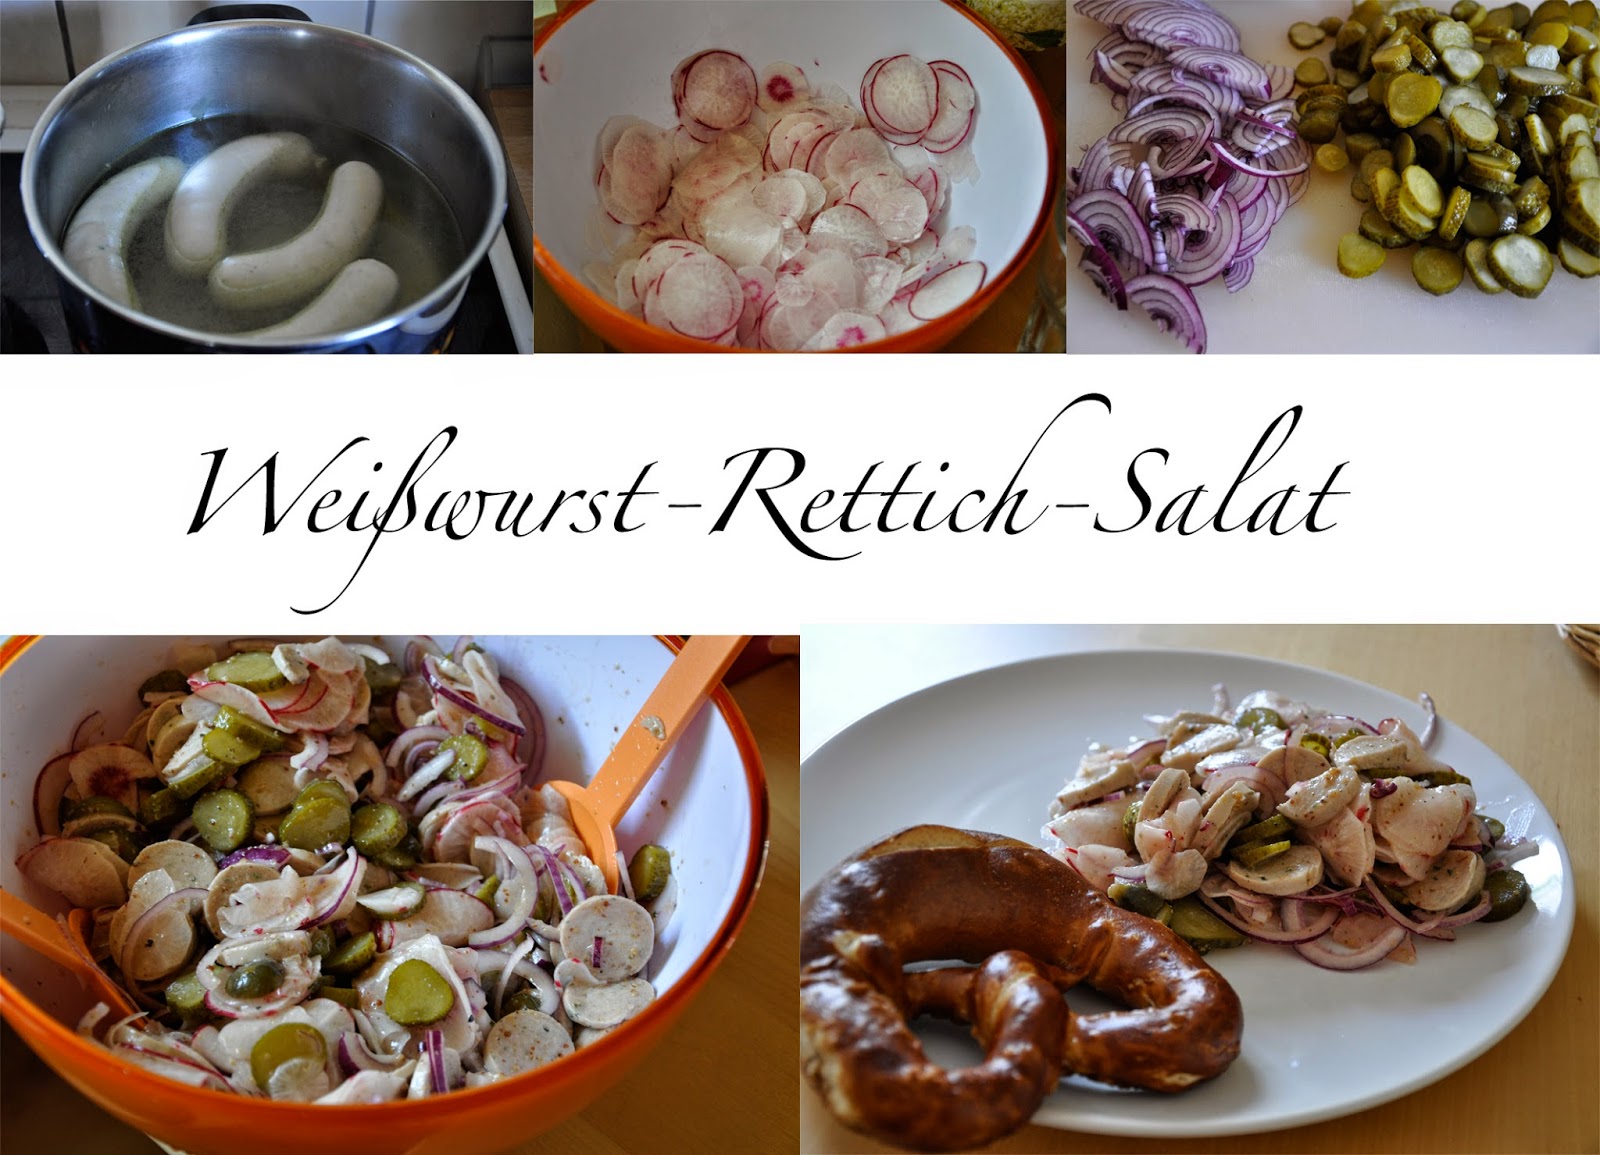 Weißwurst-Rettich-Salat | Bild-Collage